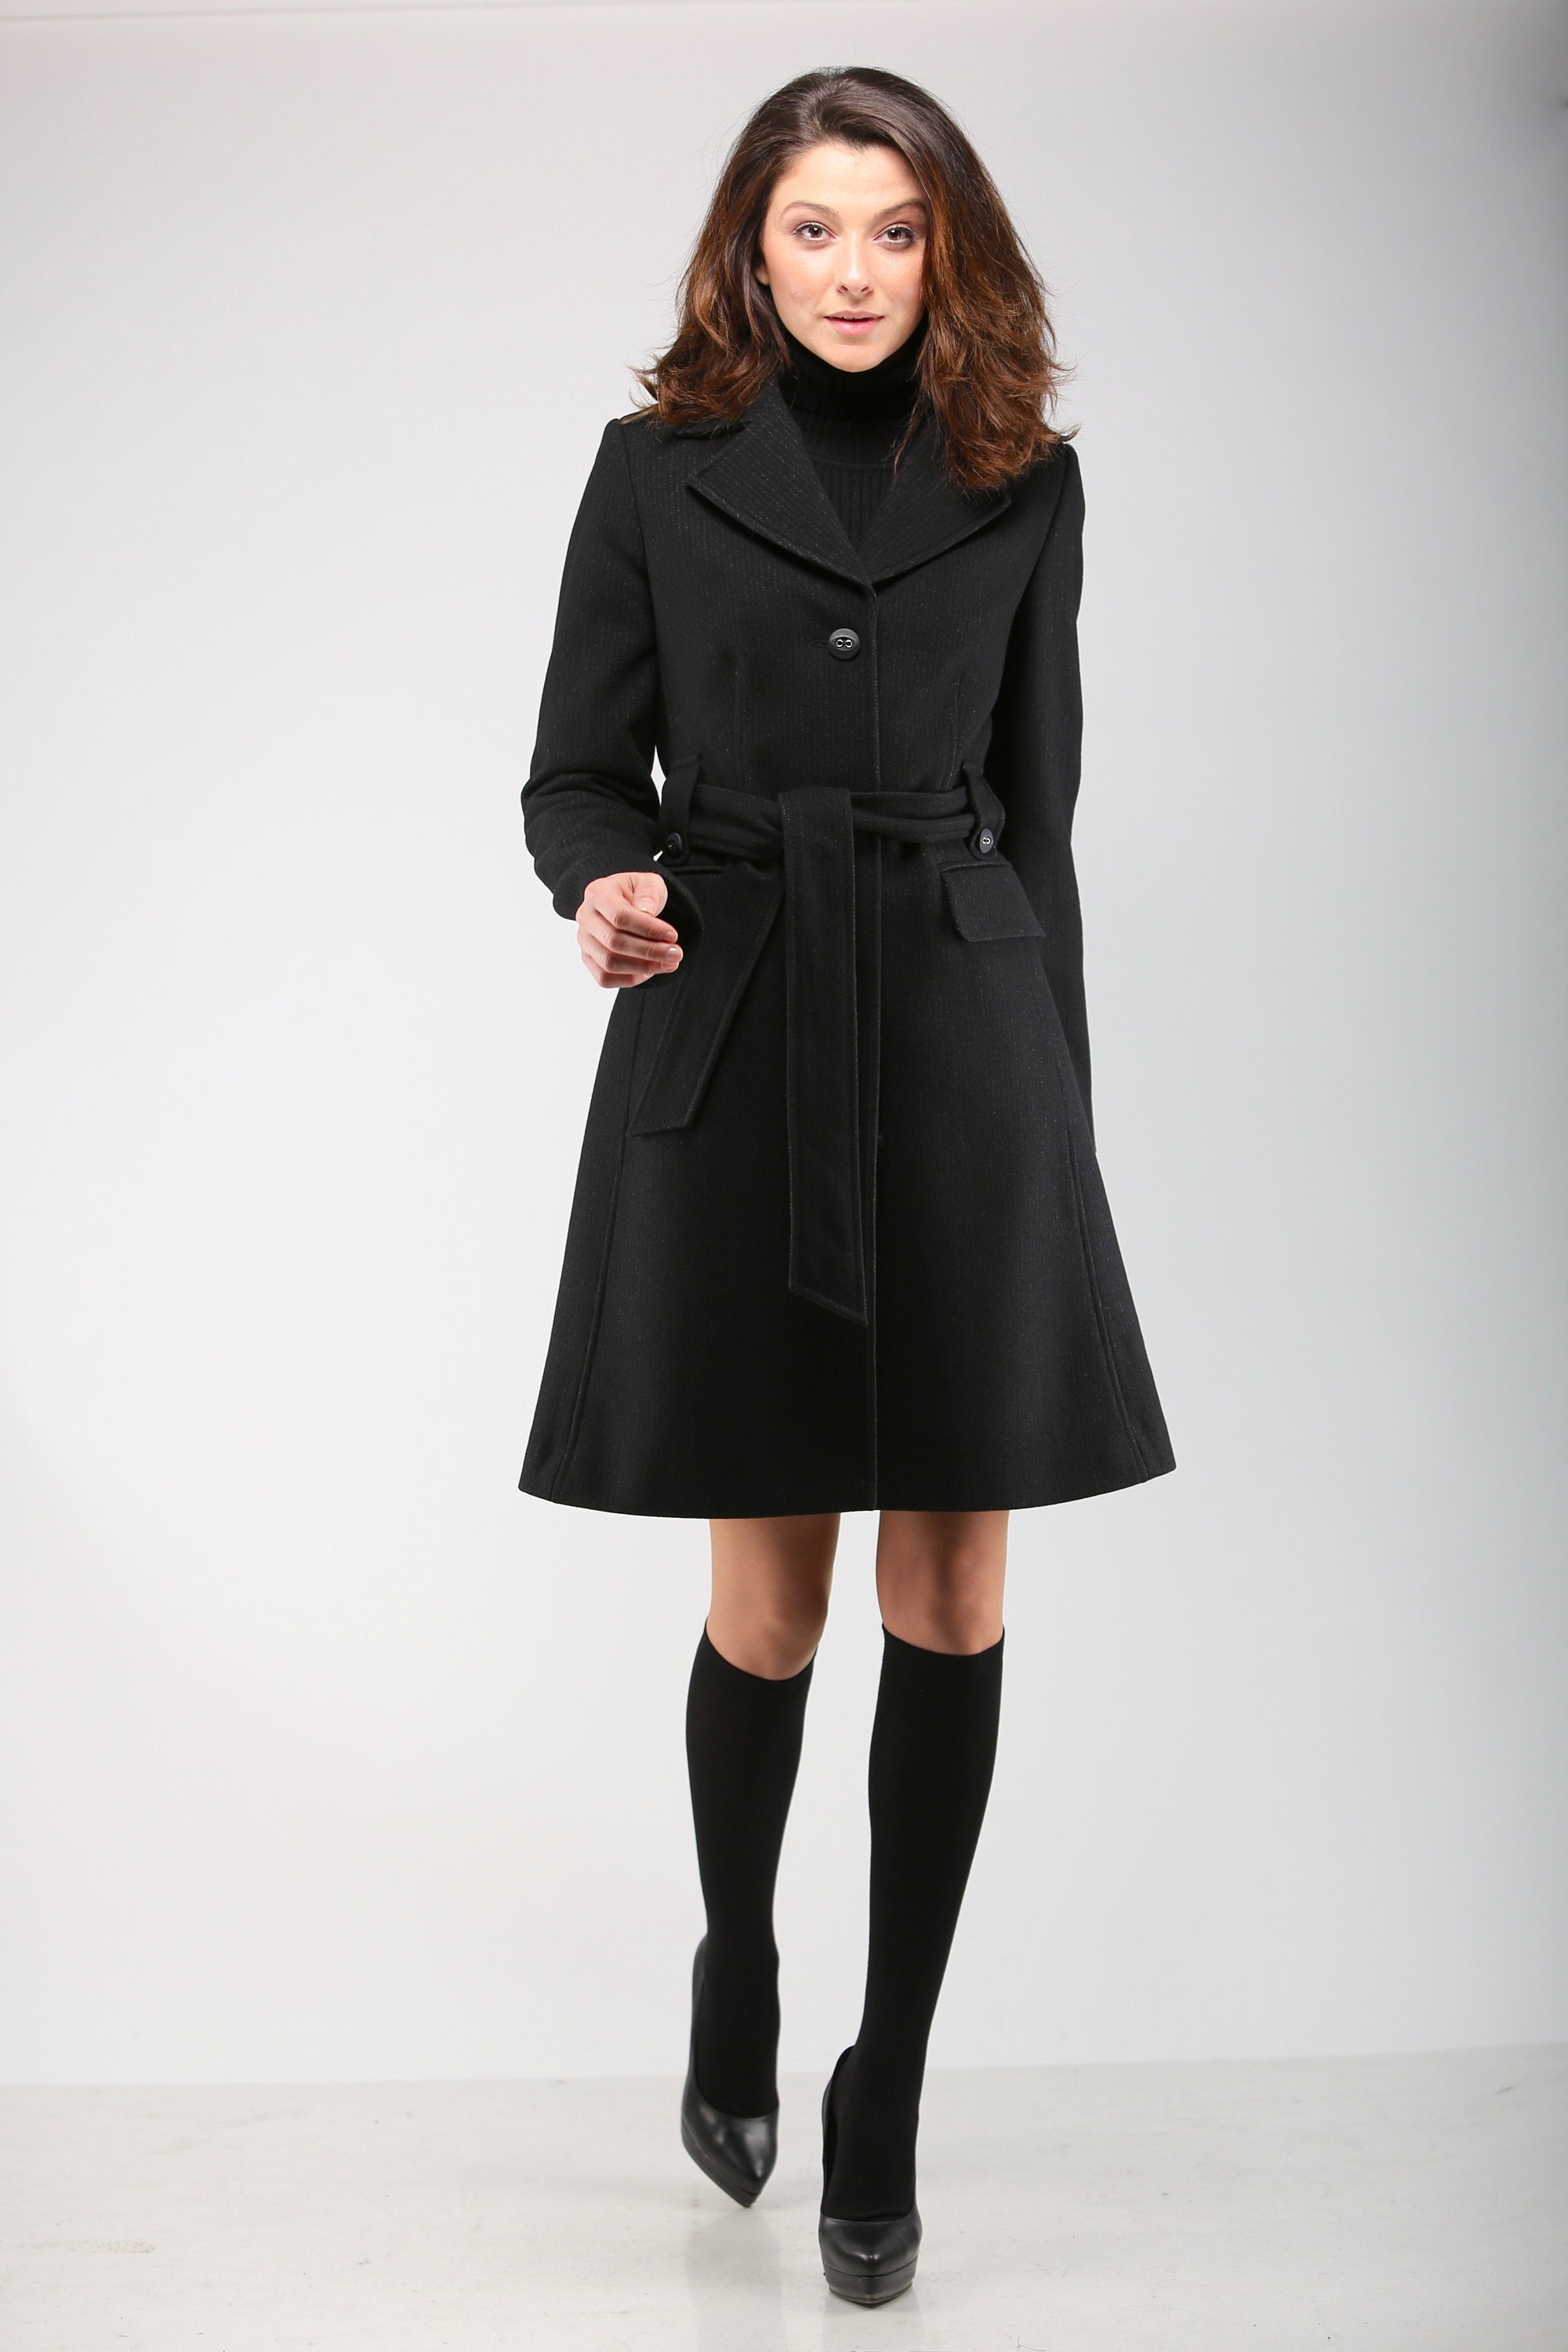 Abrigo de lana negro elegante para mujer con falda plisada y detalle  satinado, abrigo de invierno con cinturón de VIEMA V00770 -  España